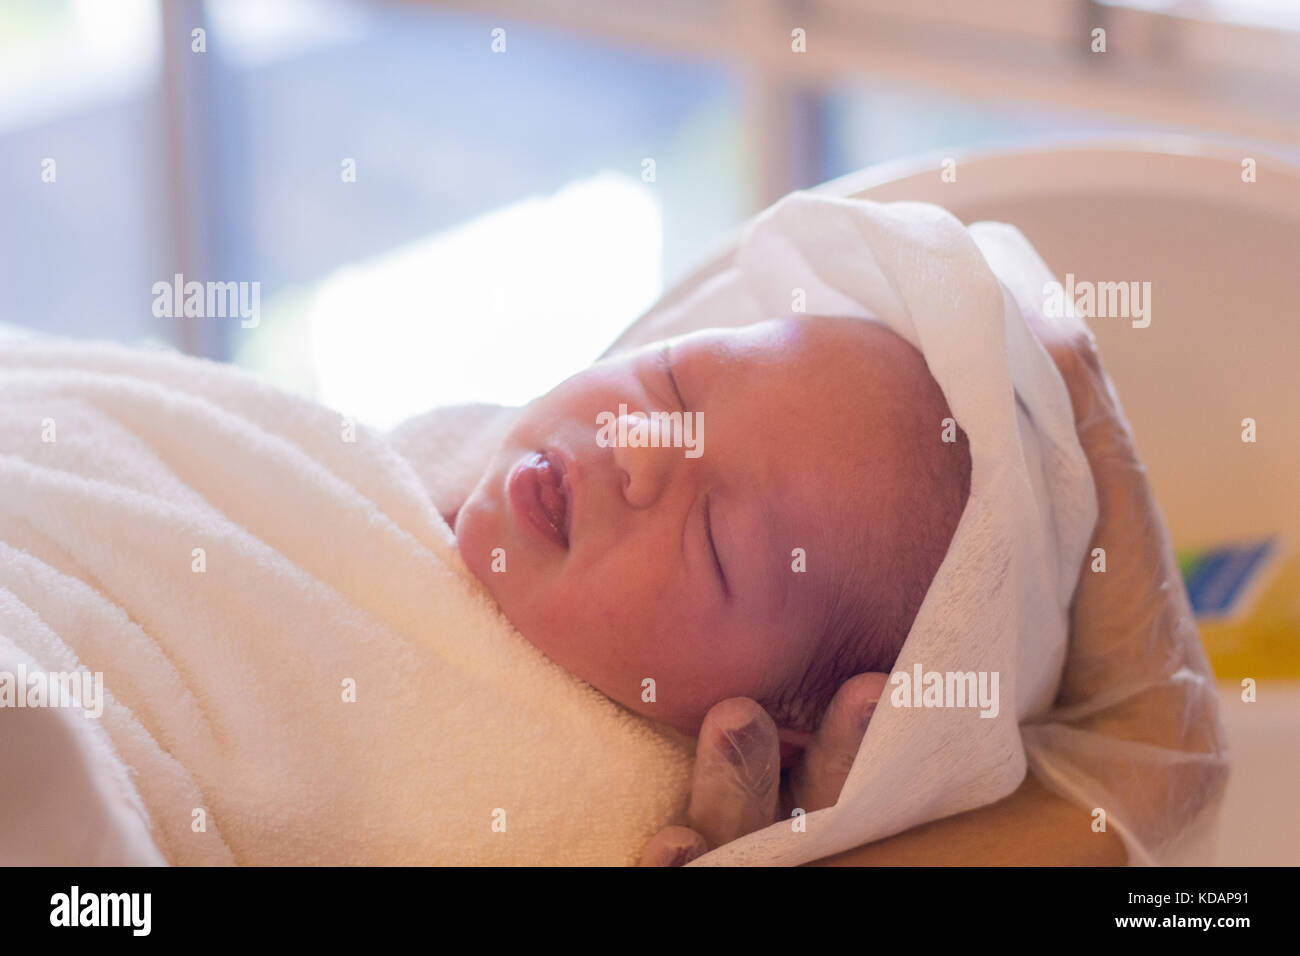 Mano humana sosteniendo un bebé recién nacido envuelta en una toalla chica Foto de stock